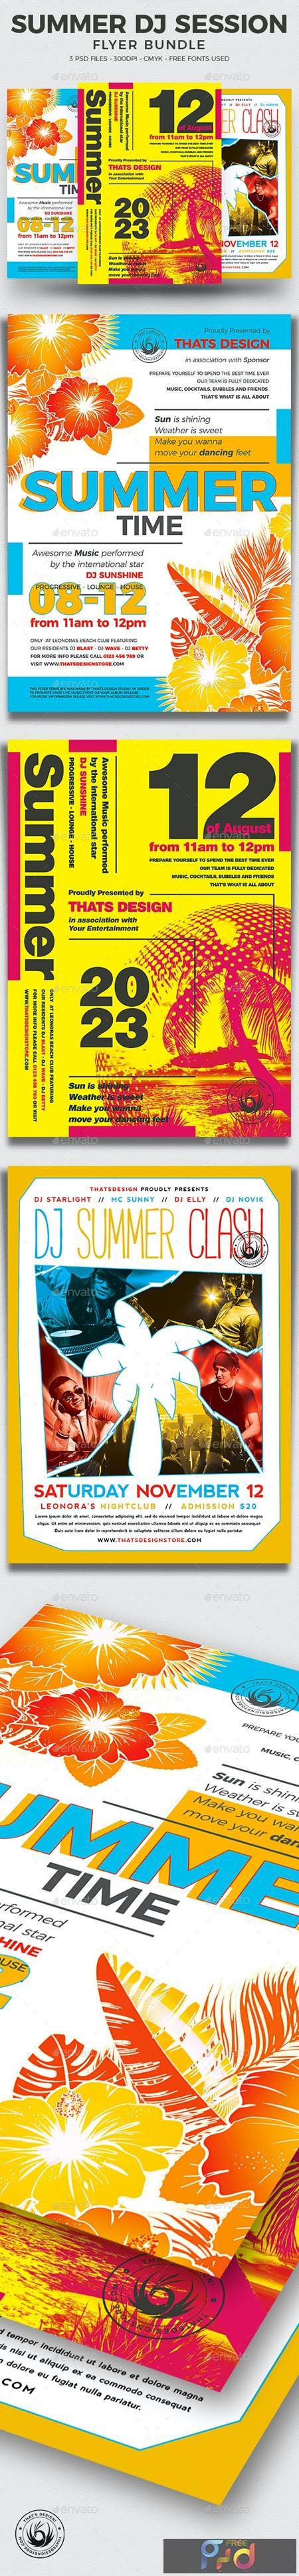 Summer DJ Session Flyer Bundle